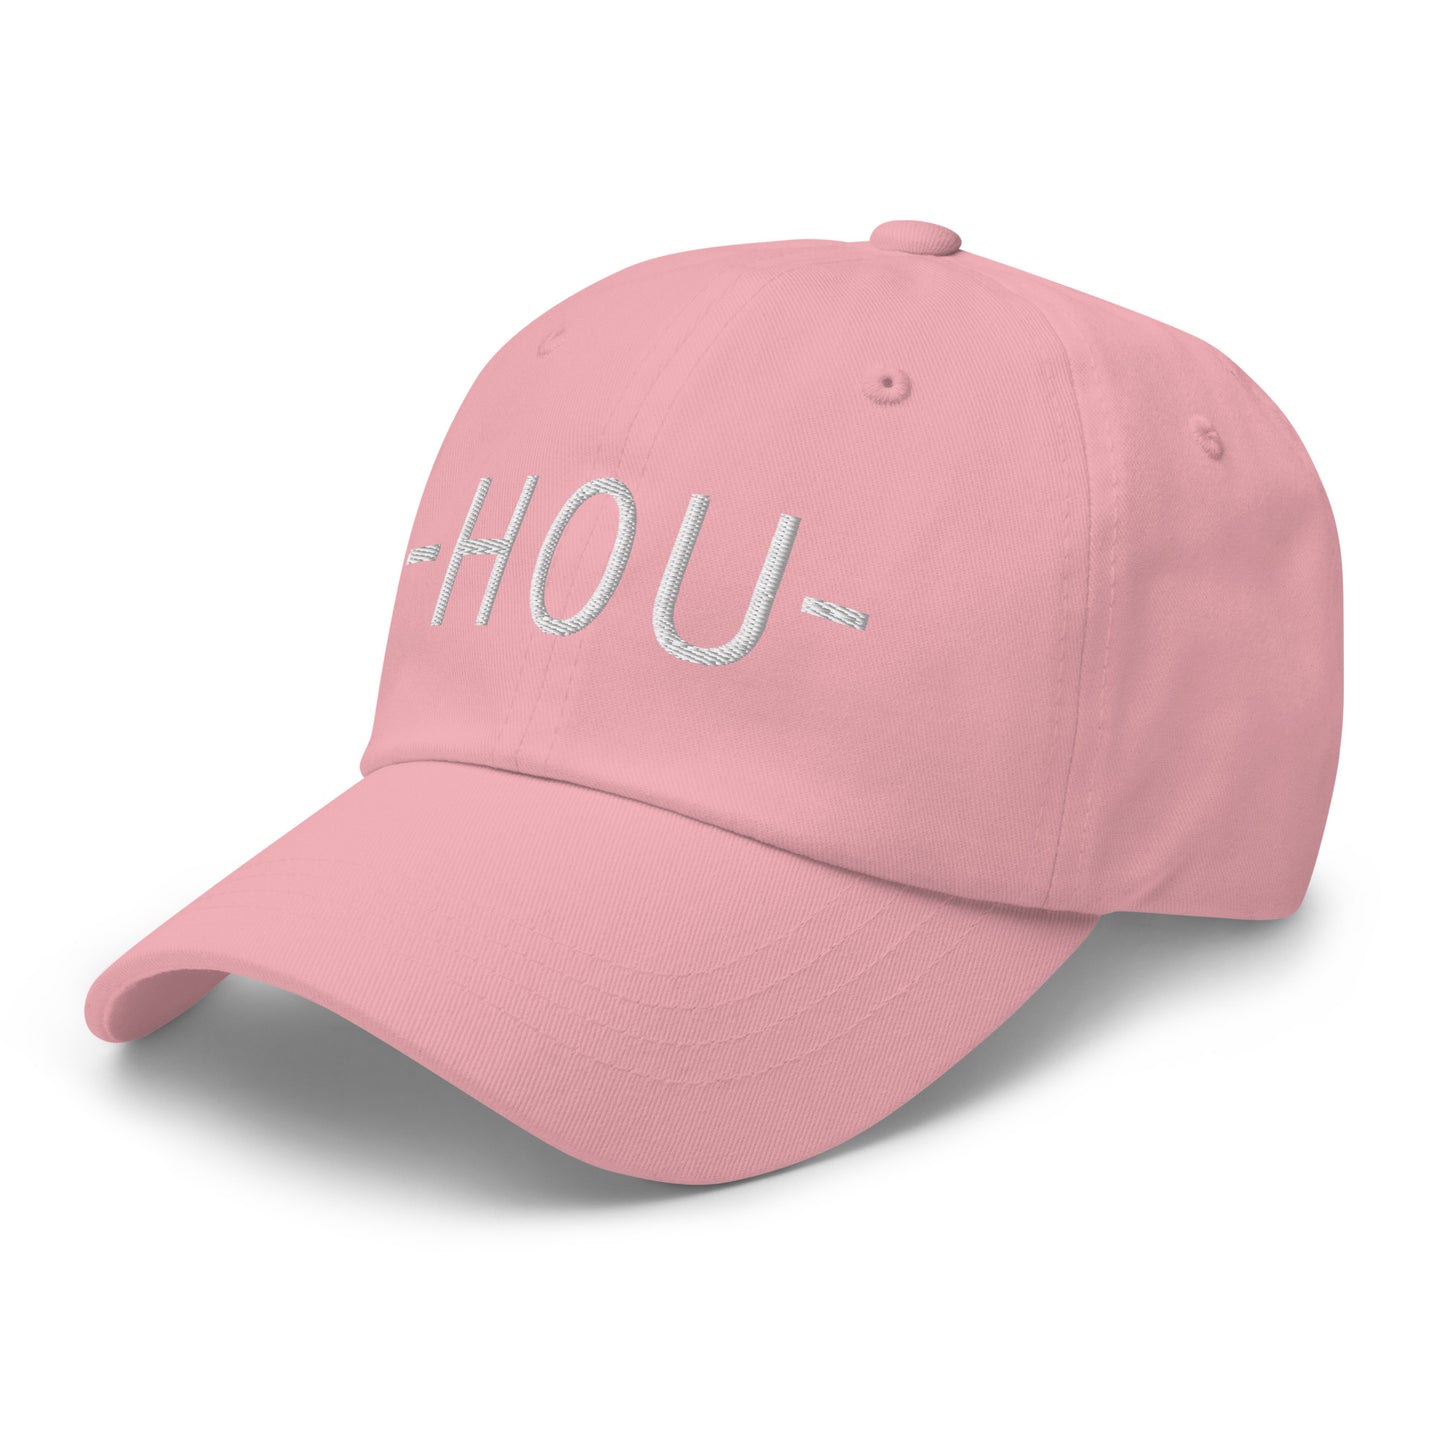 Souvenir Baseball Cap - White • HOU Houston • YHM Designs - Image 26